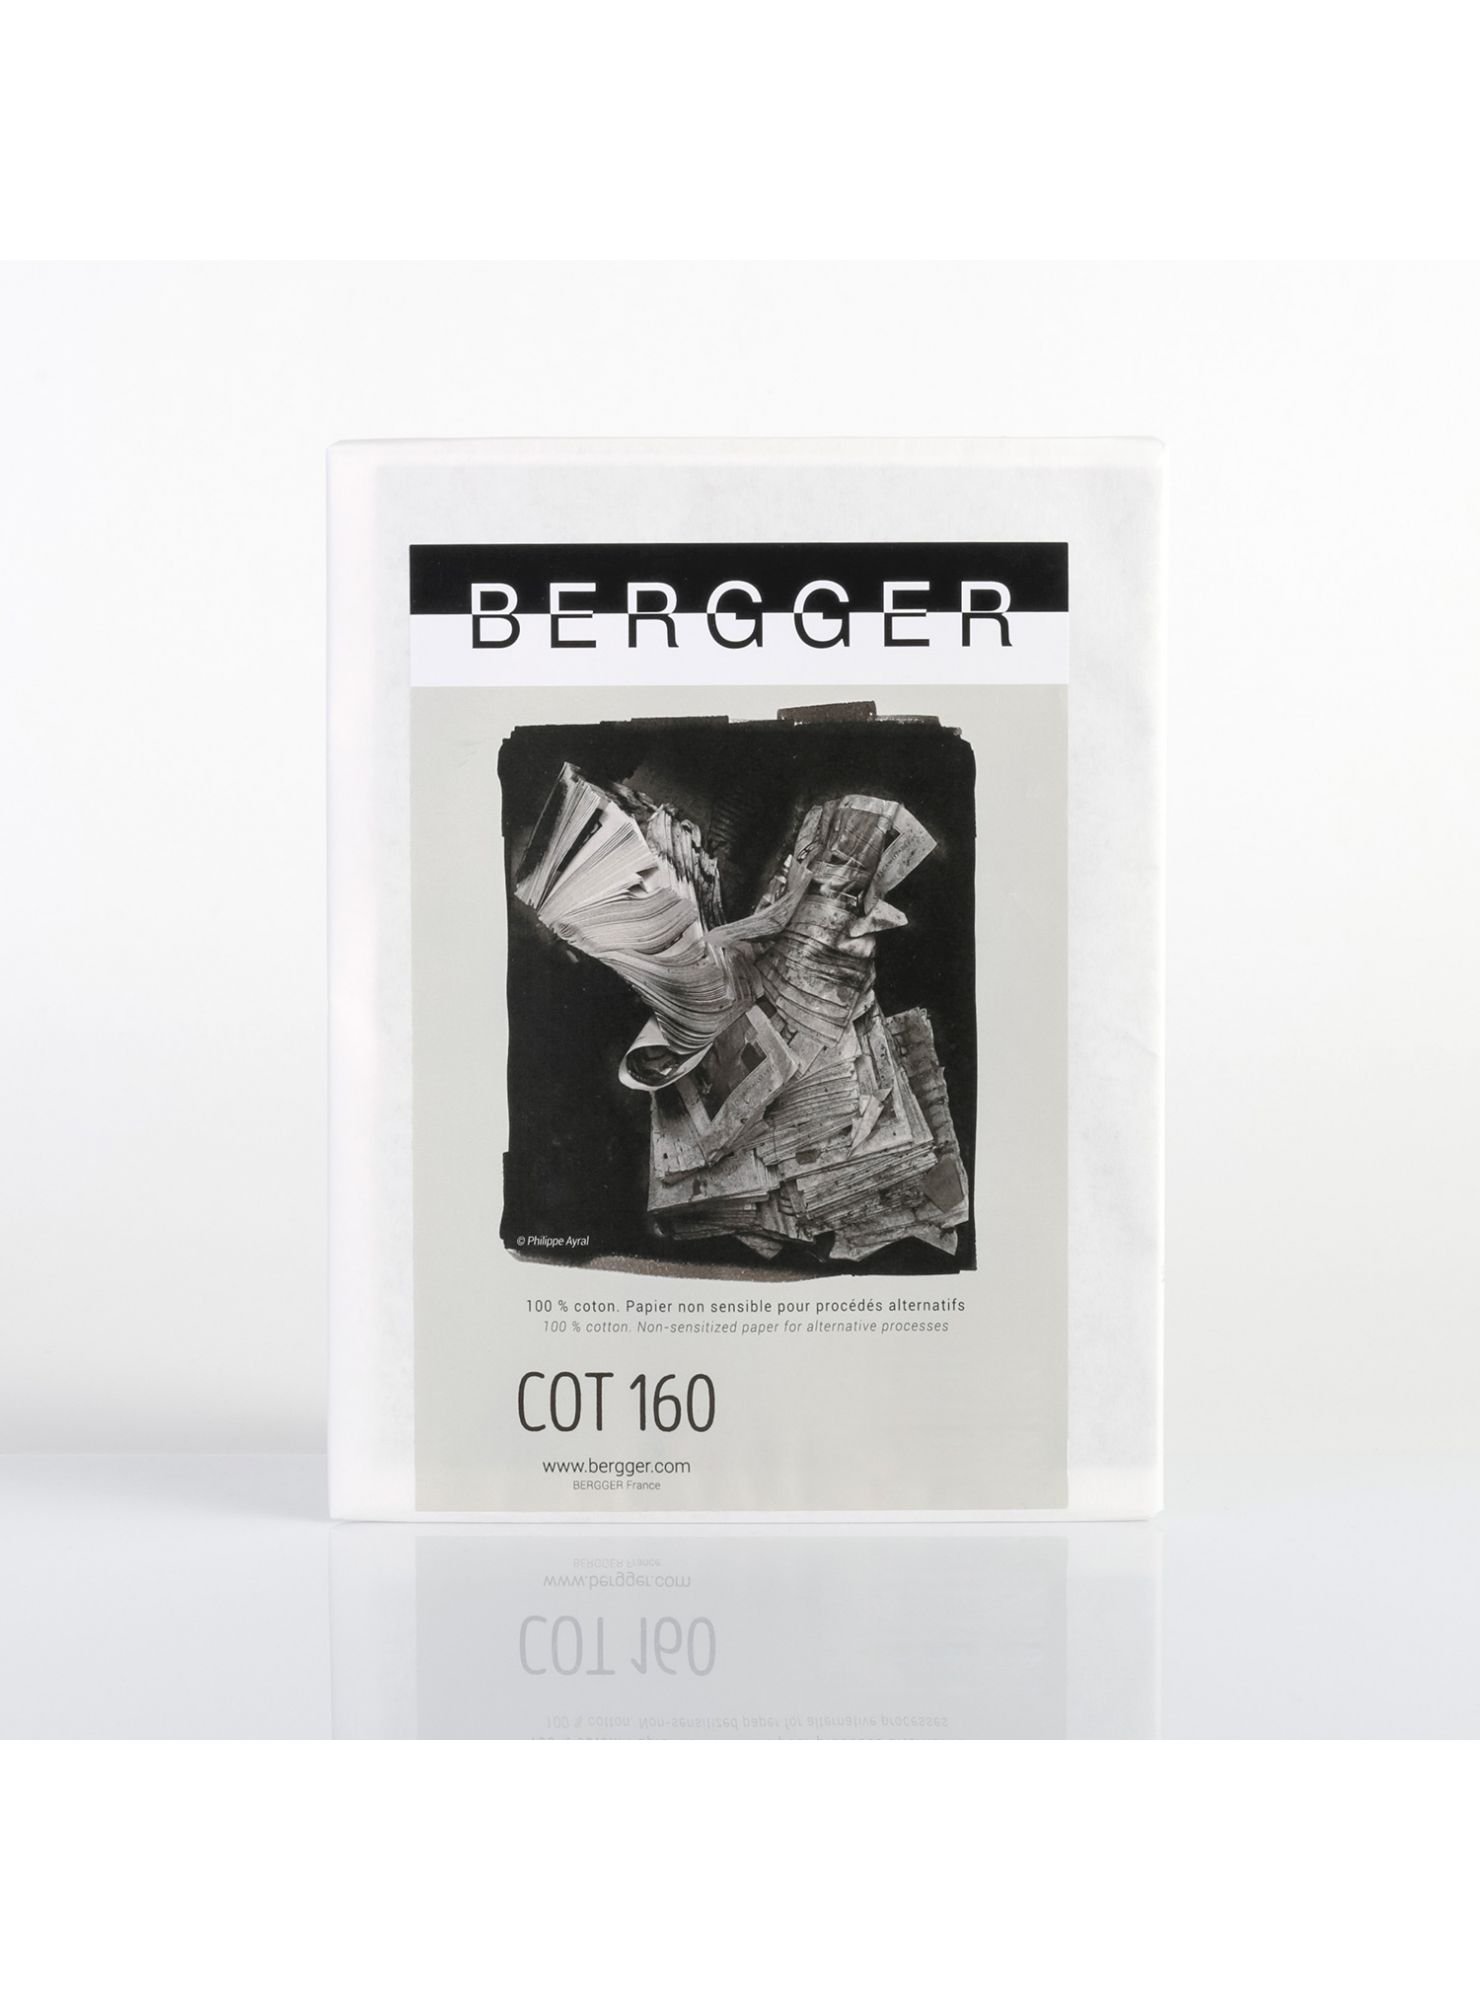 BERGGER - Papier COT 160 100% coton - 145 g/m2